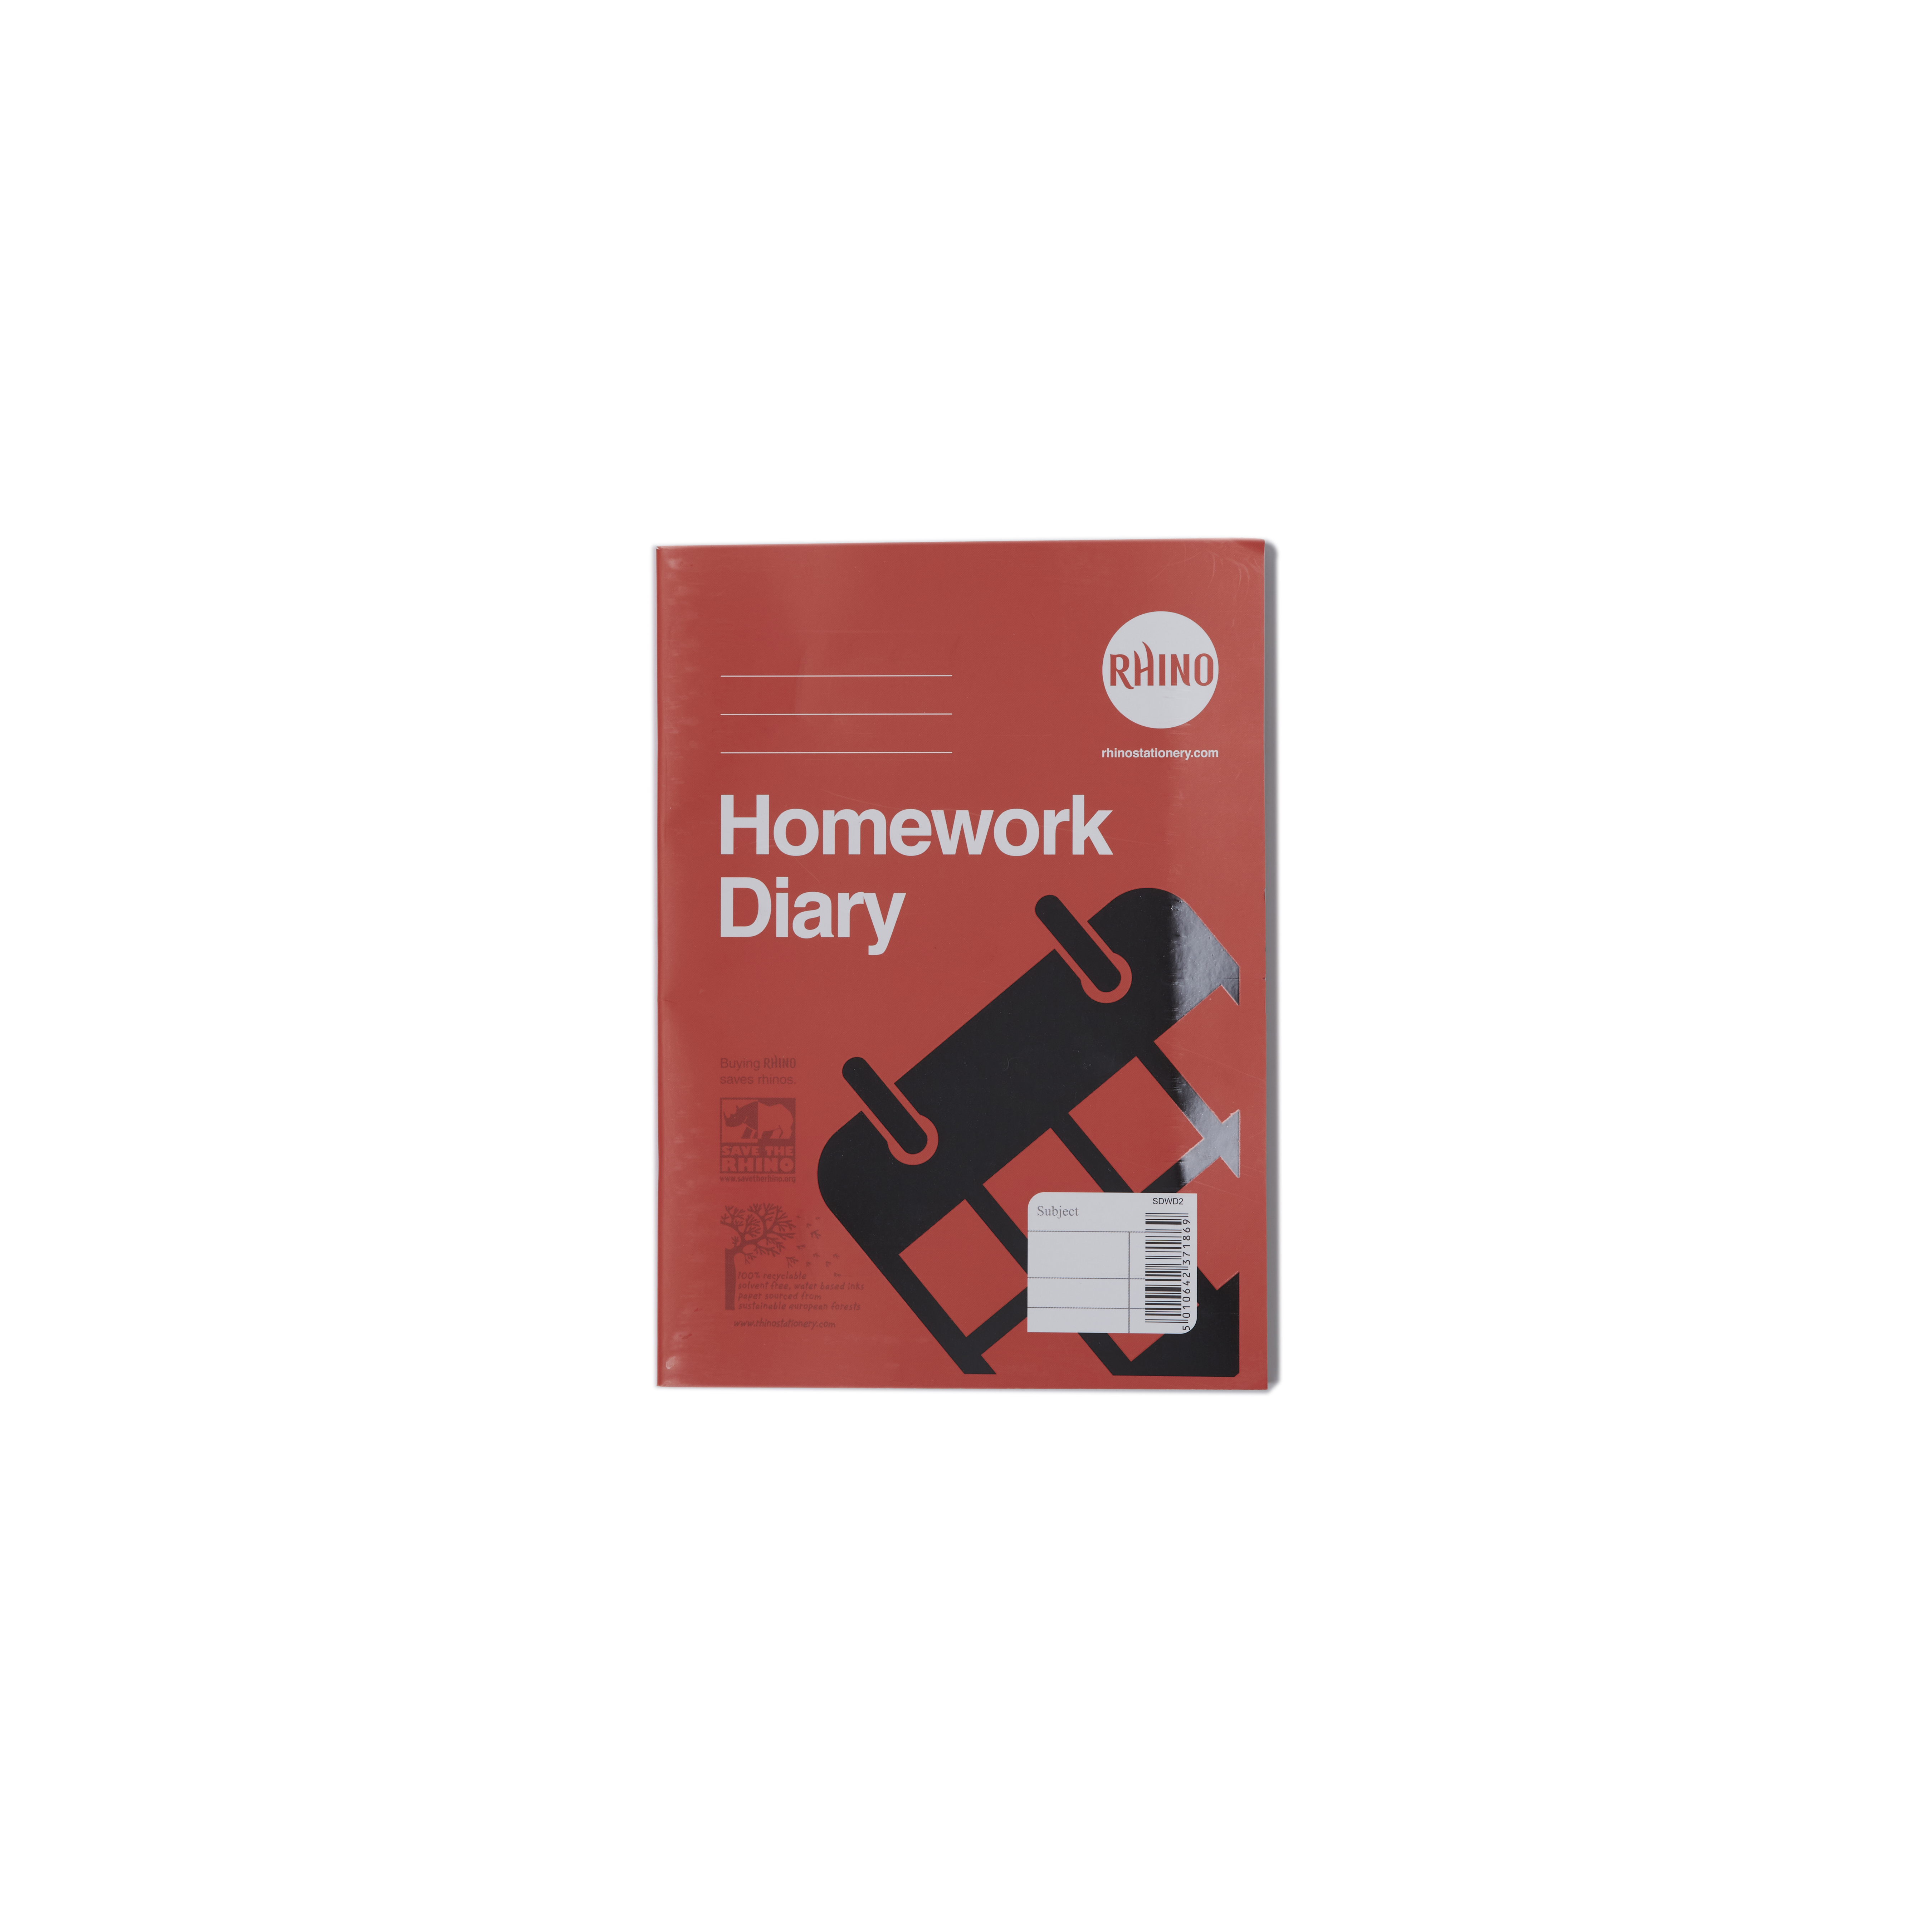 Homework Diary 84p 5day P100